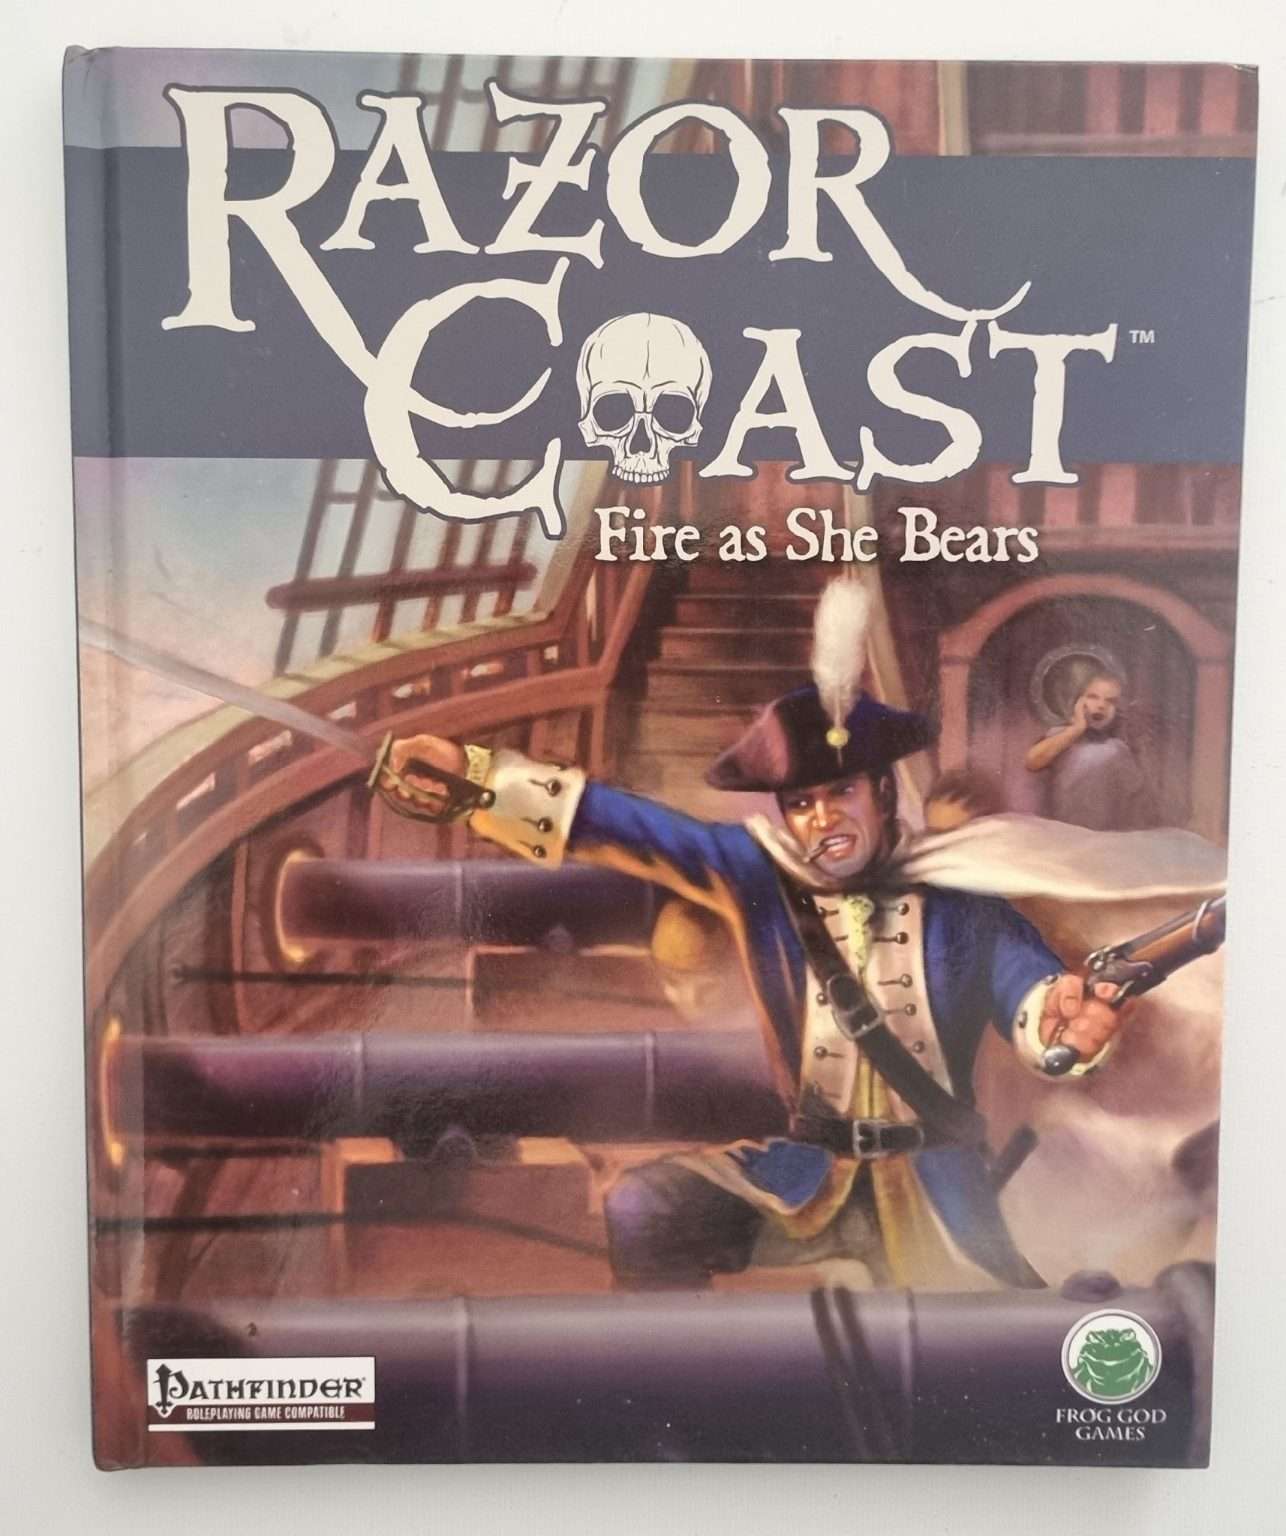 Pathfinder - Razor Coast - Fire as She Bears 1e